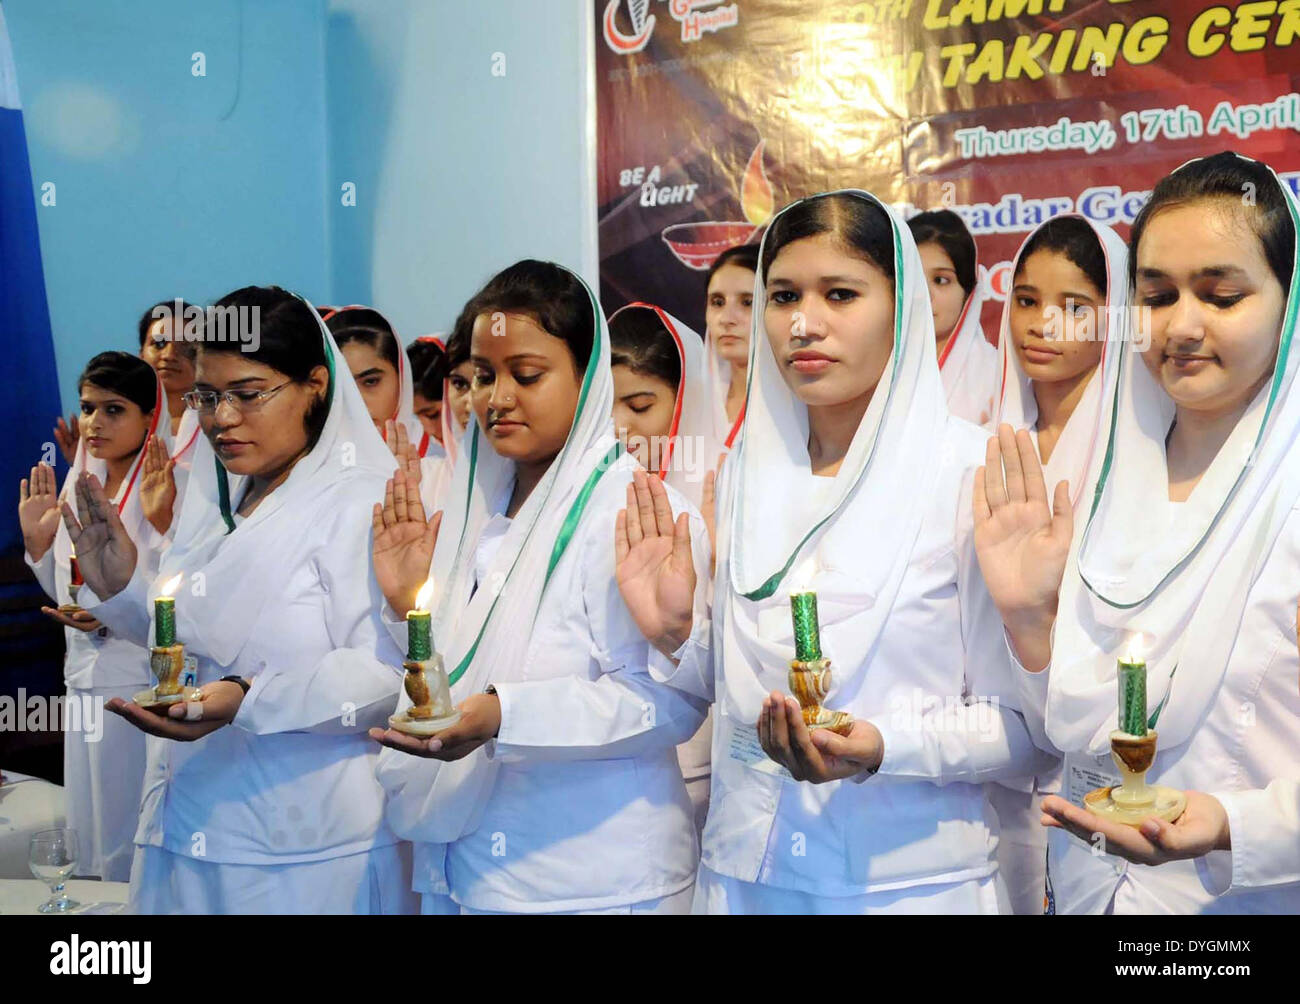 Gli infermieri di Kharadar General Hospital e Scuola tenere alleggerita candele e amministrare giuramento durante '9 lampada di illuminazione e giuramento" cerimonia tenutasi a KGH premessa a Karachi il giovedì, 17 aprile 2014. Foto Stock